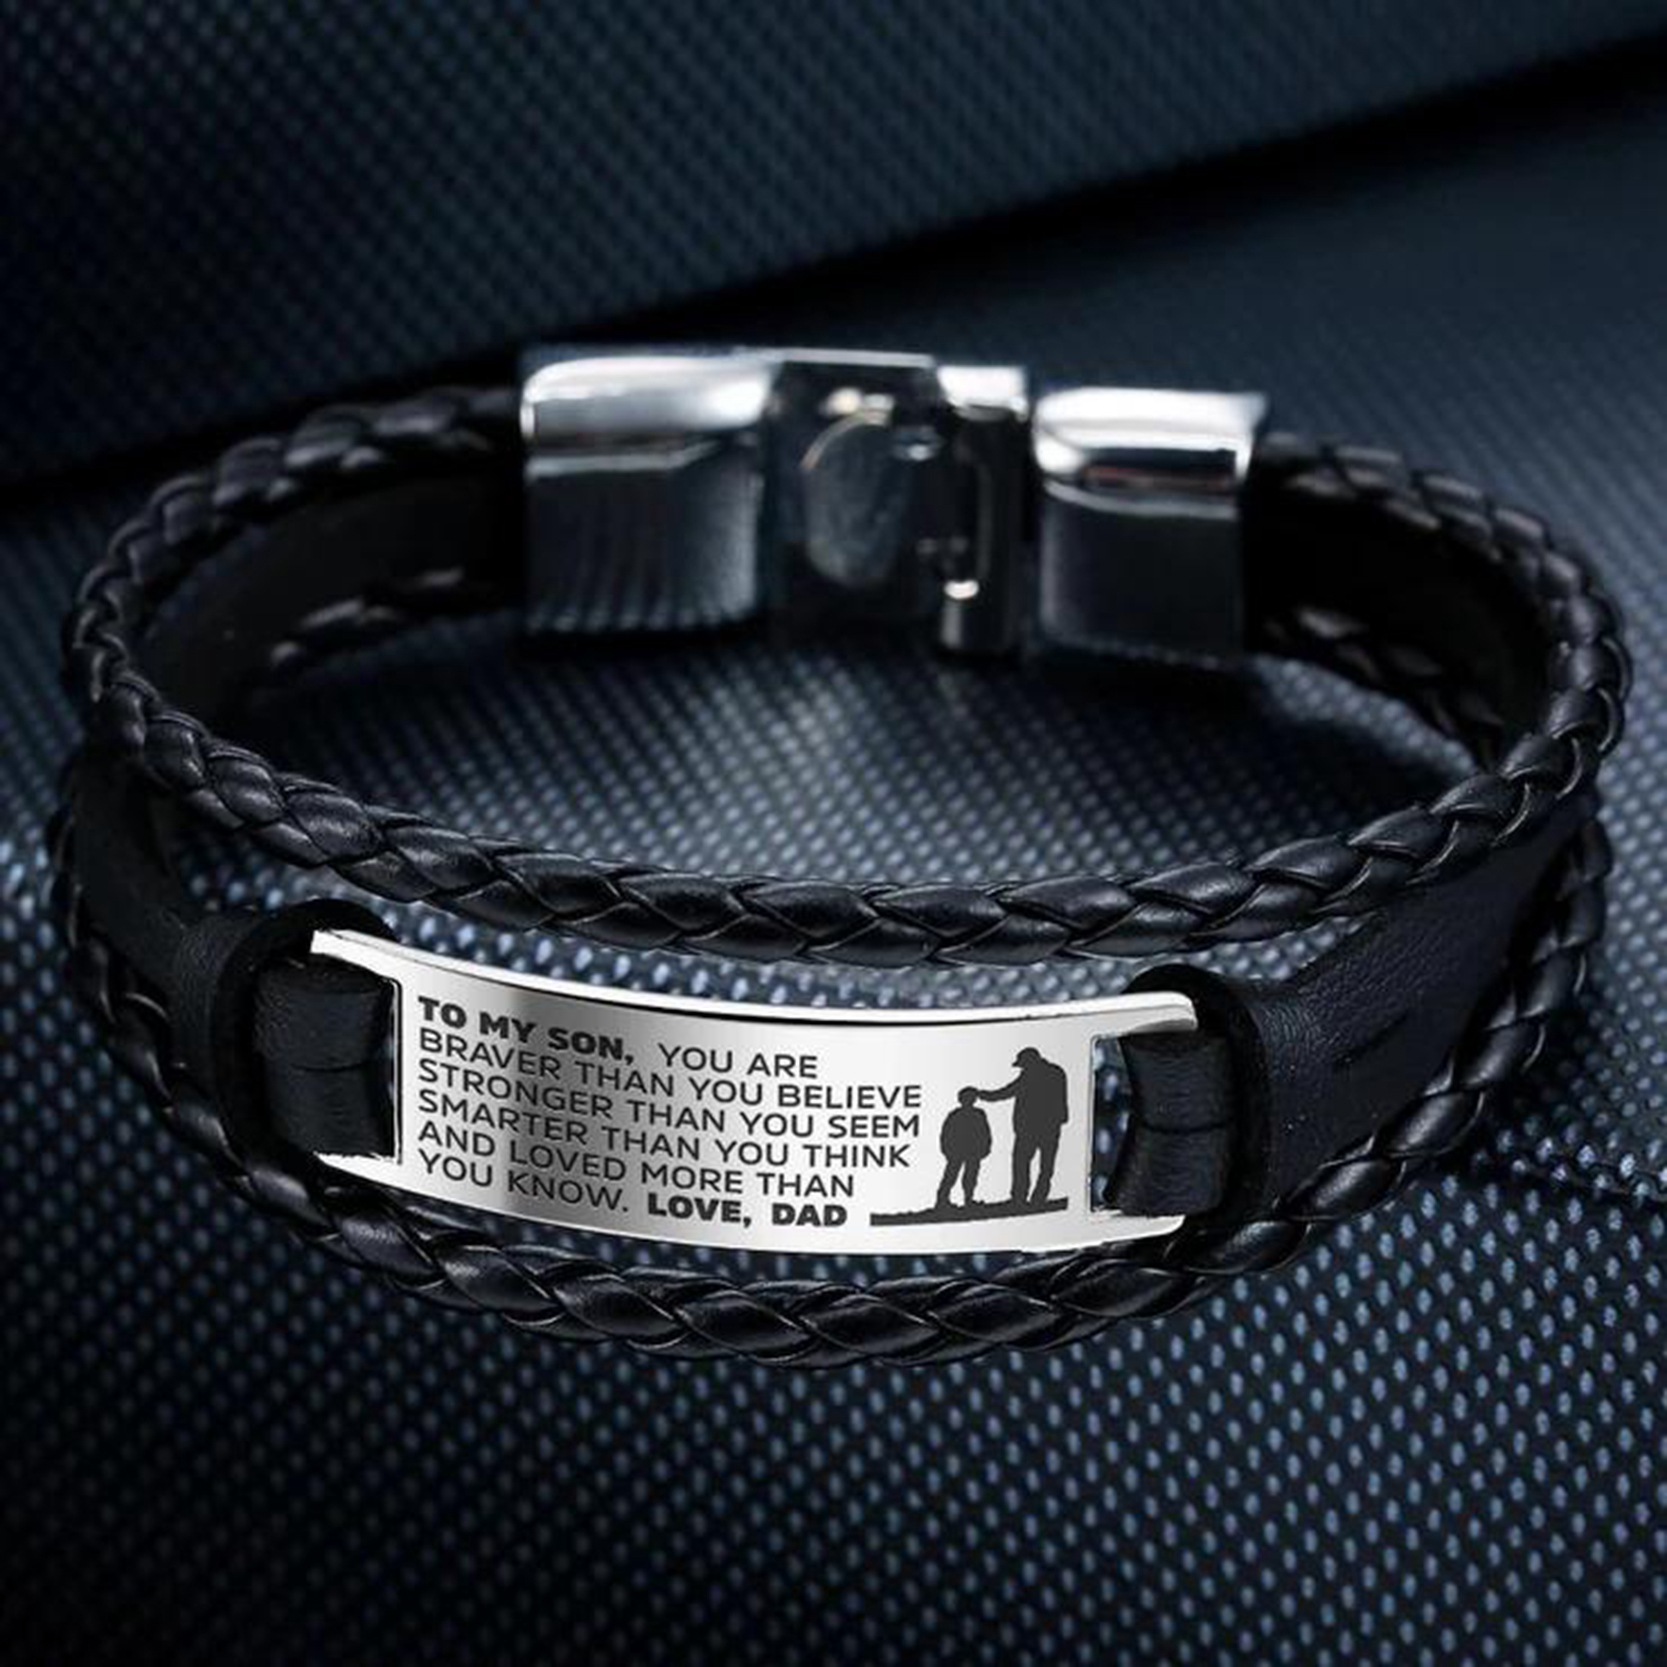 Retro Style Engrave Unisex Leather Bracelet